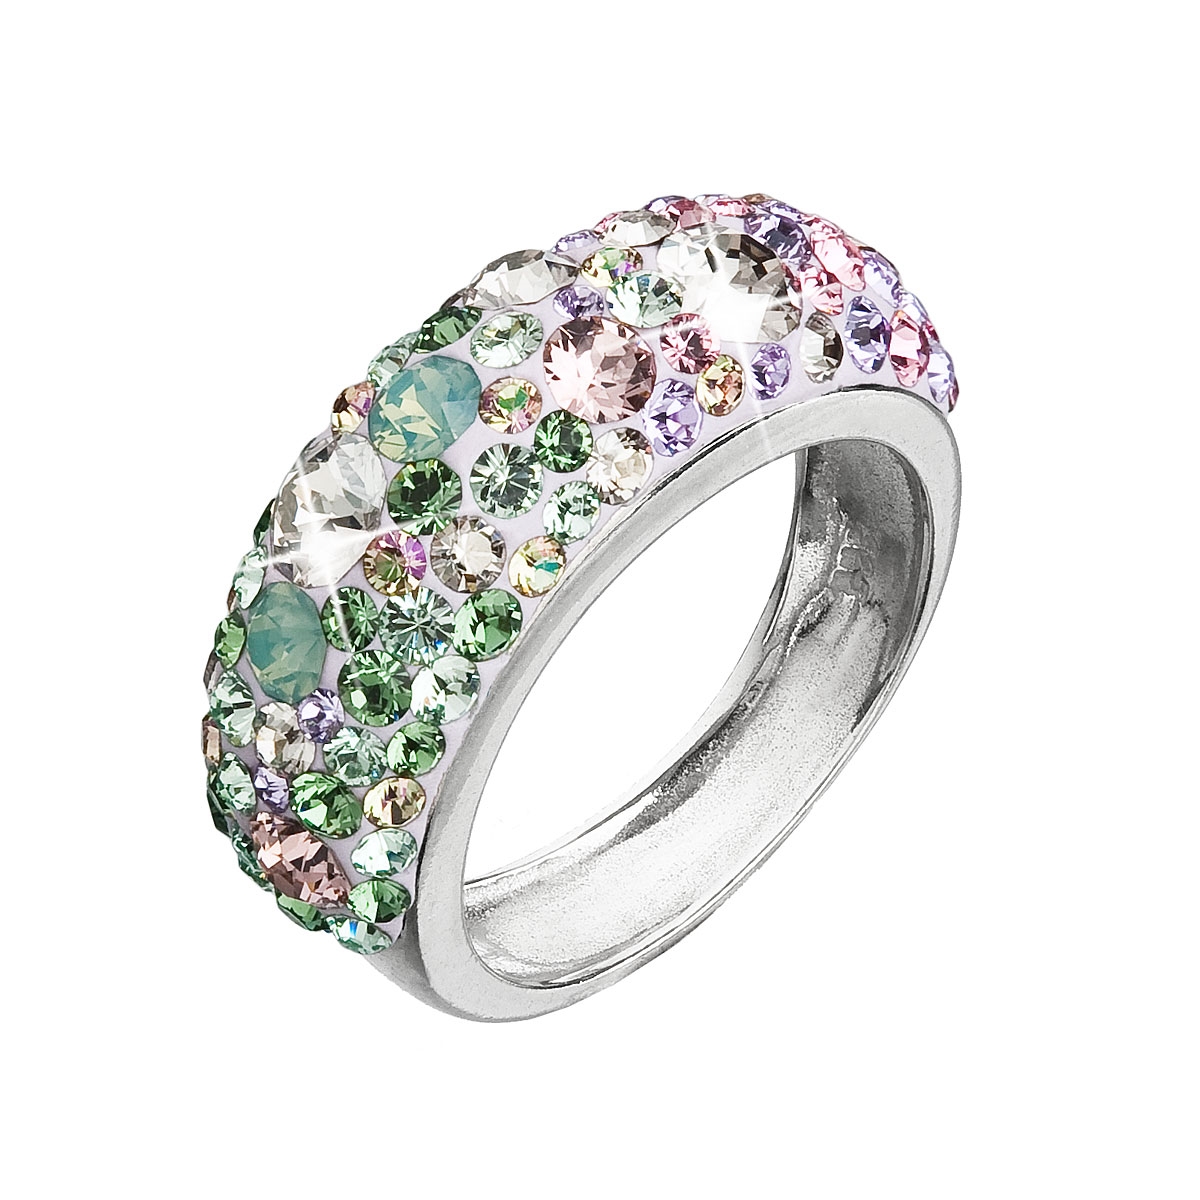 Strieborný prsteň s kryštálmi Crystals from Swarovski ®, Sakura